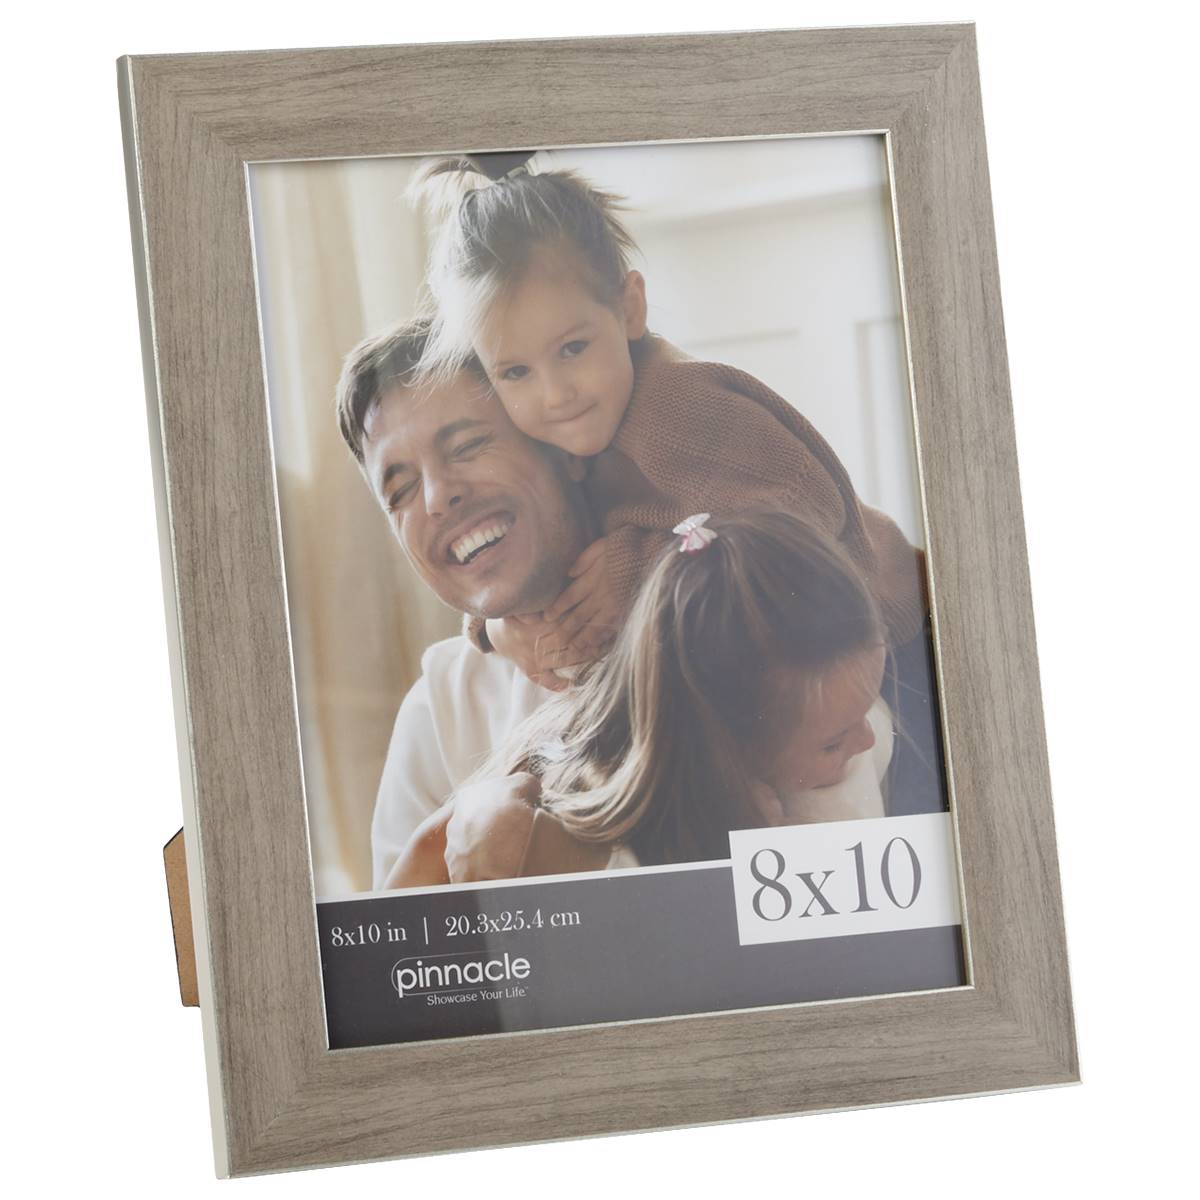 Pinnacle Grey Metallic Frame - 8x10